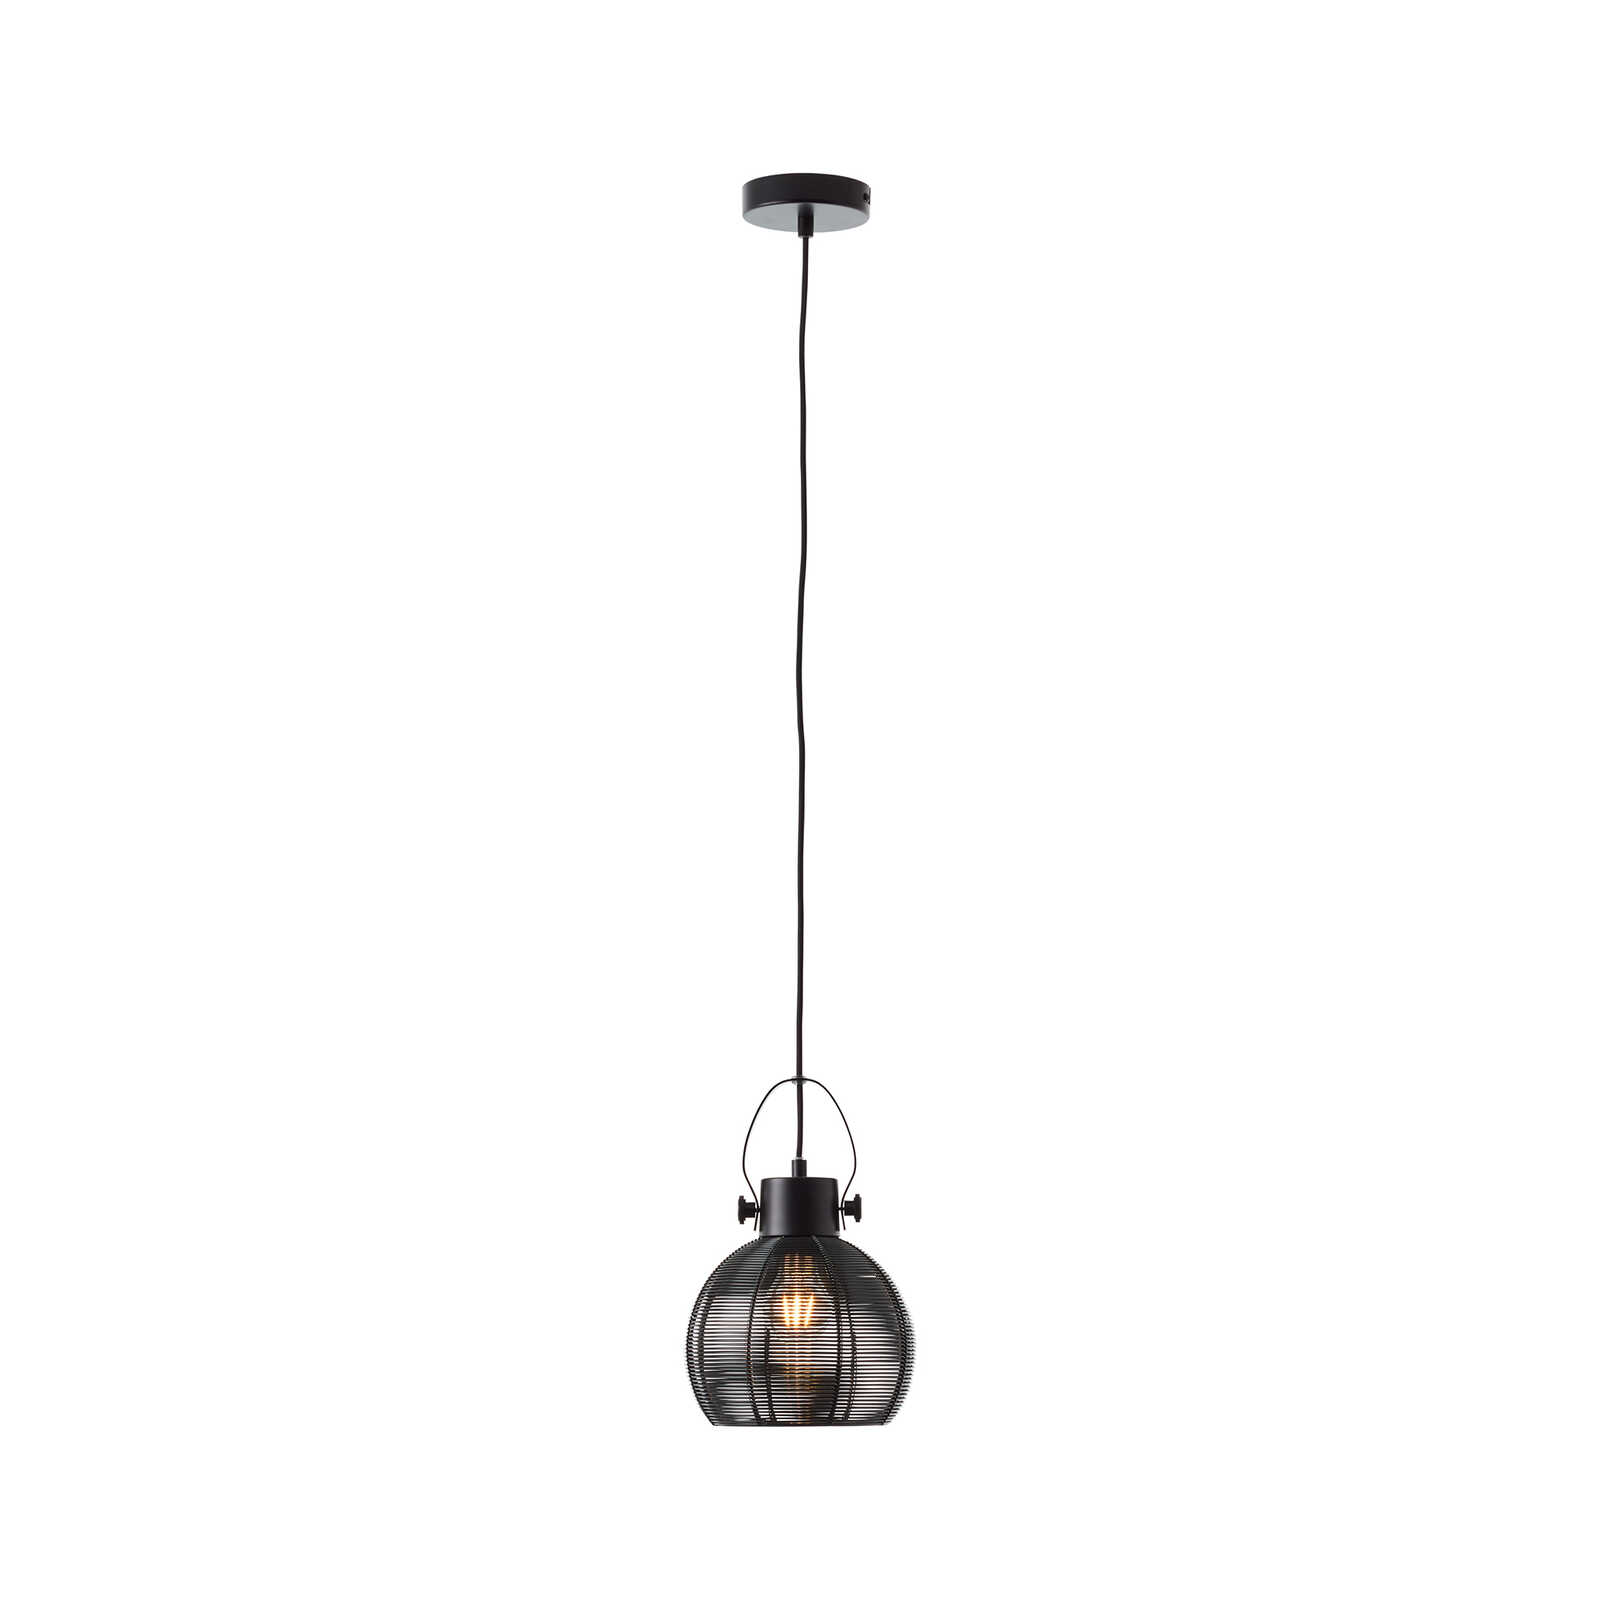 Metalen hanglamp - Milou - Zwart
